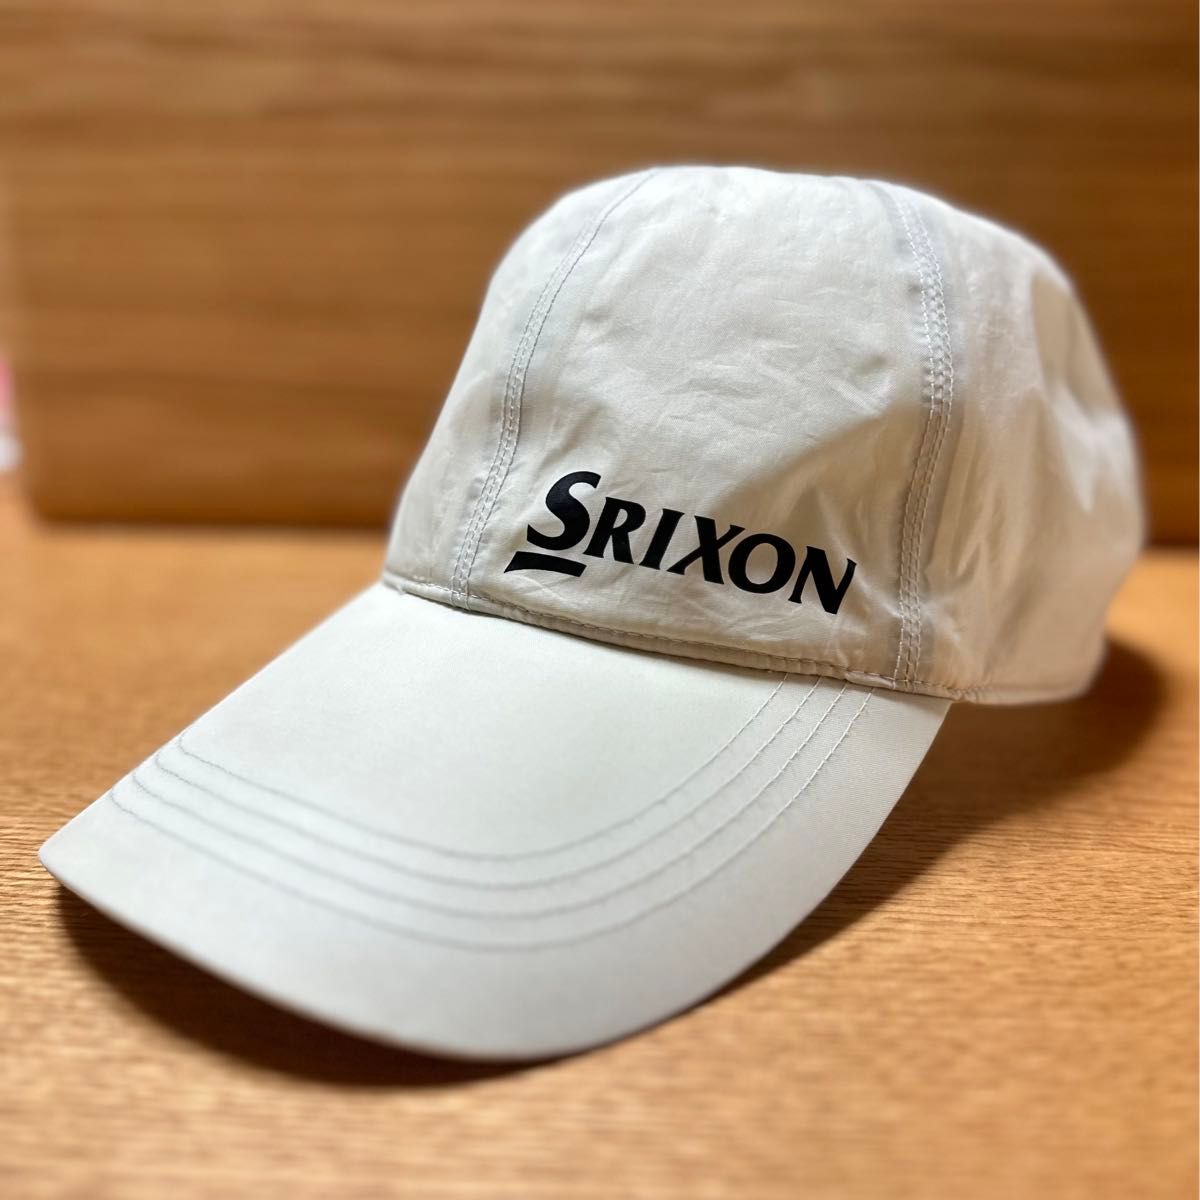 SRIXON スリクソン レインキャップ ゴルフ 帽子 フリーサイズ クーポン消化、カテゴリー変更可能